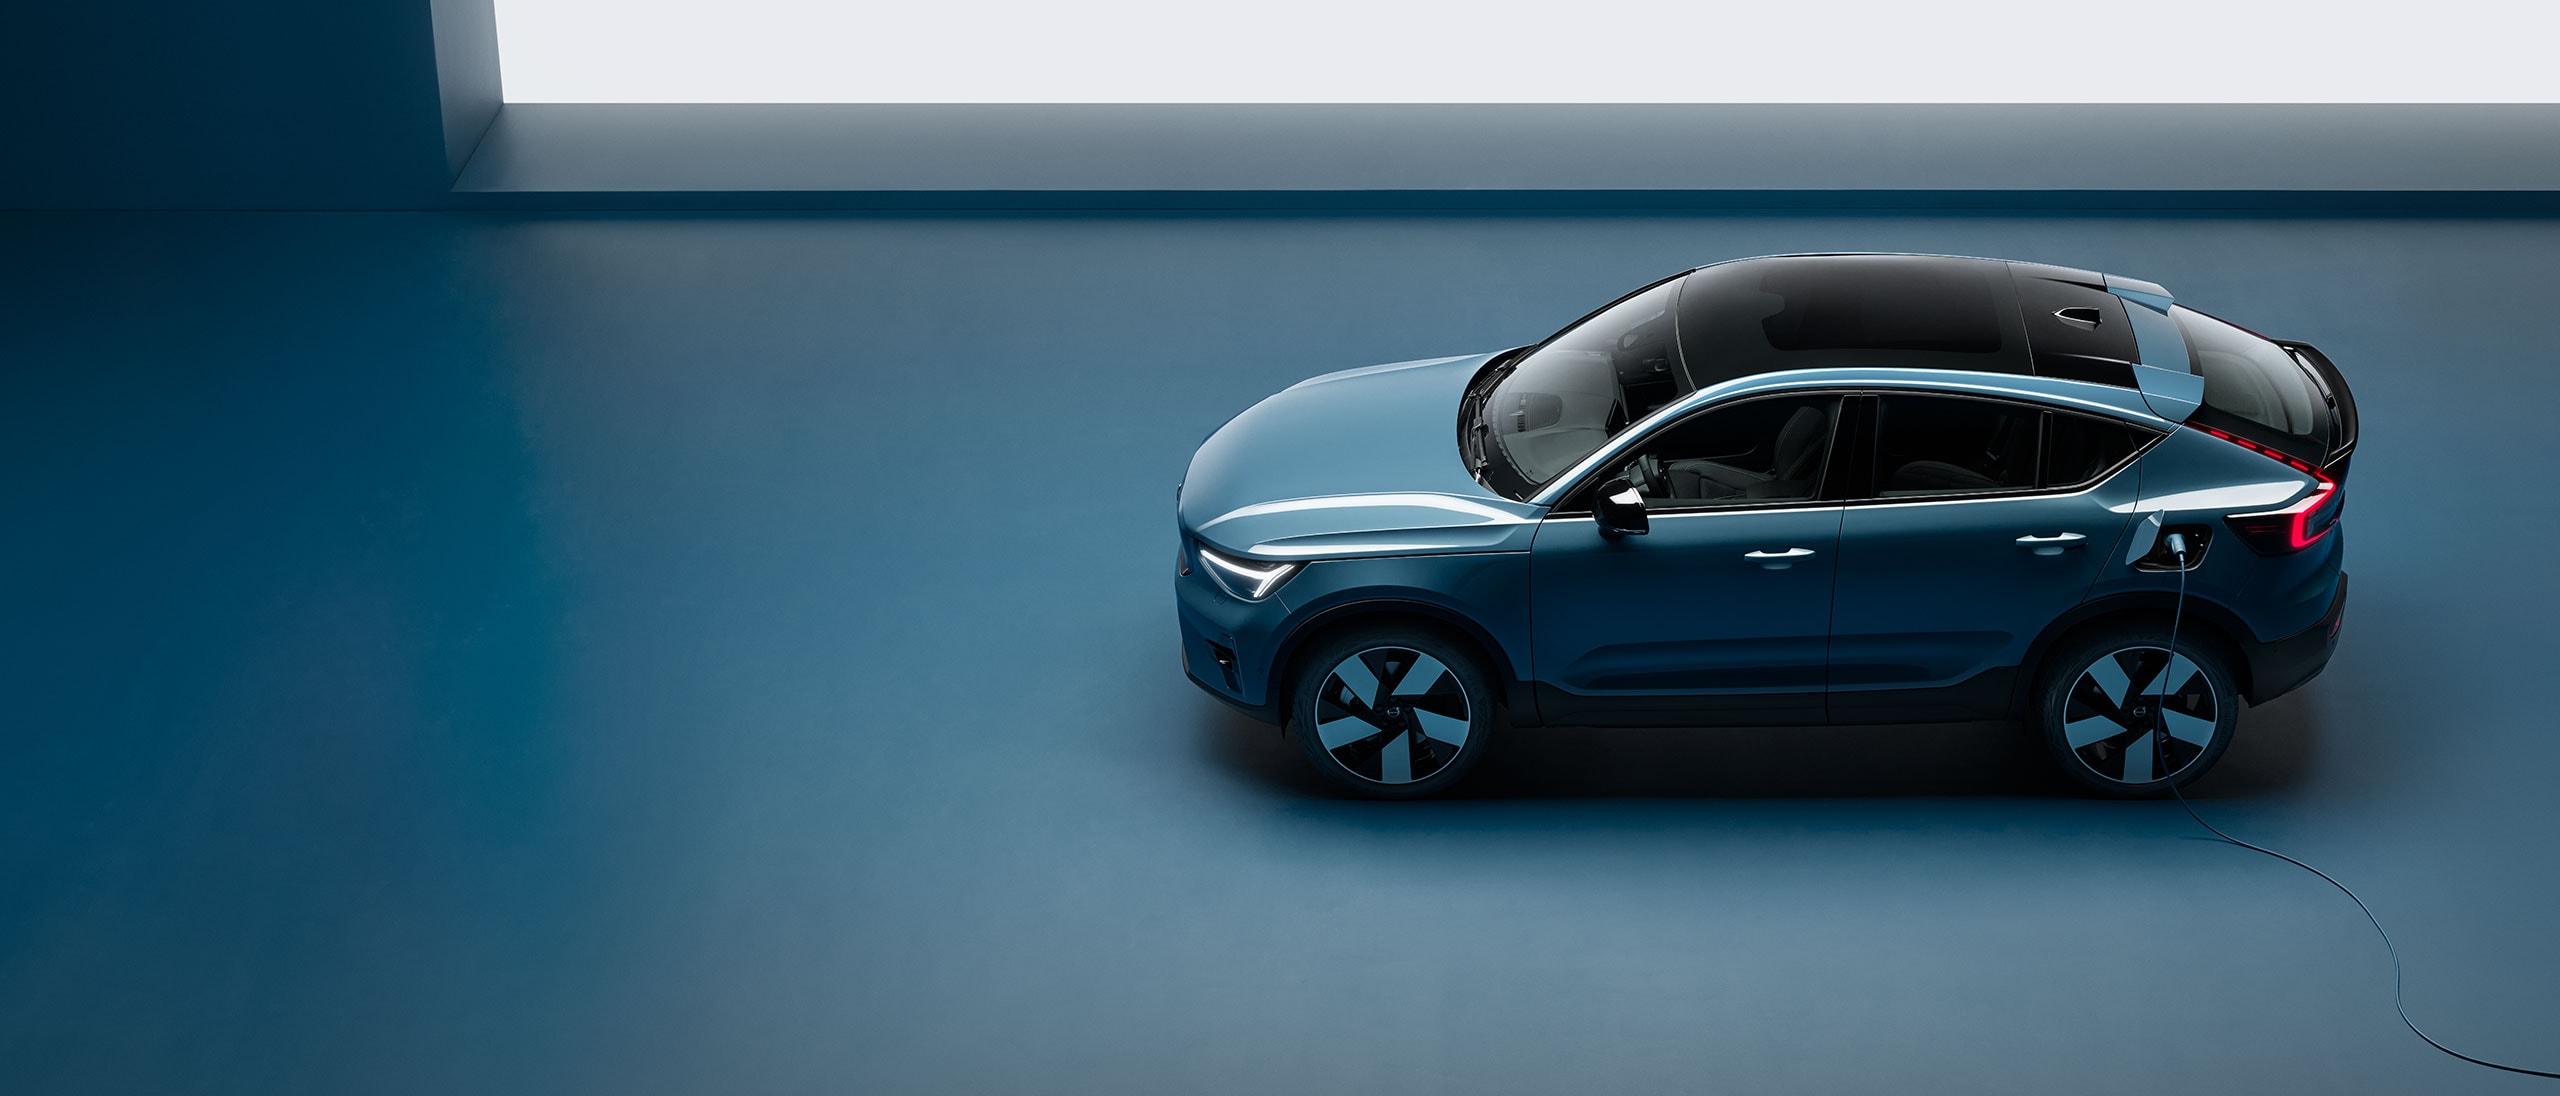 En elektrisk Volvo-bil oplades med et ladekabel i et indendørs miljø.